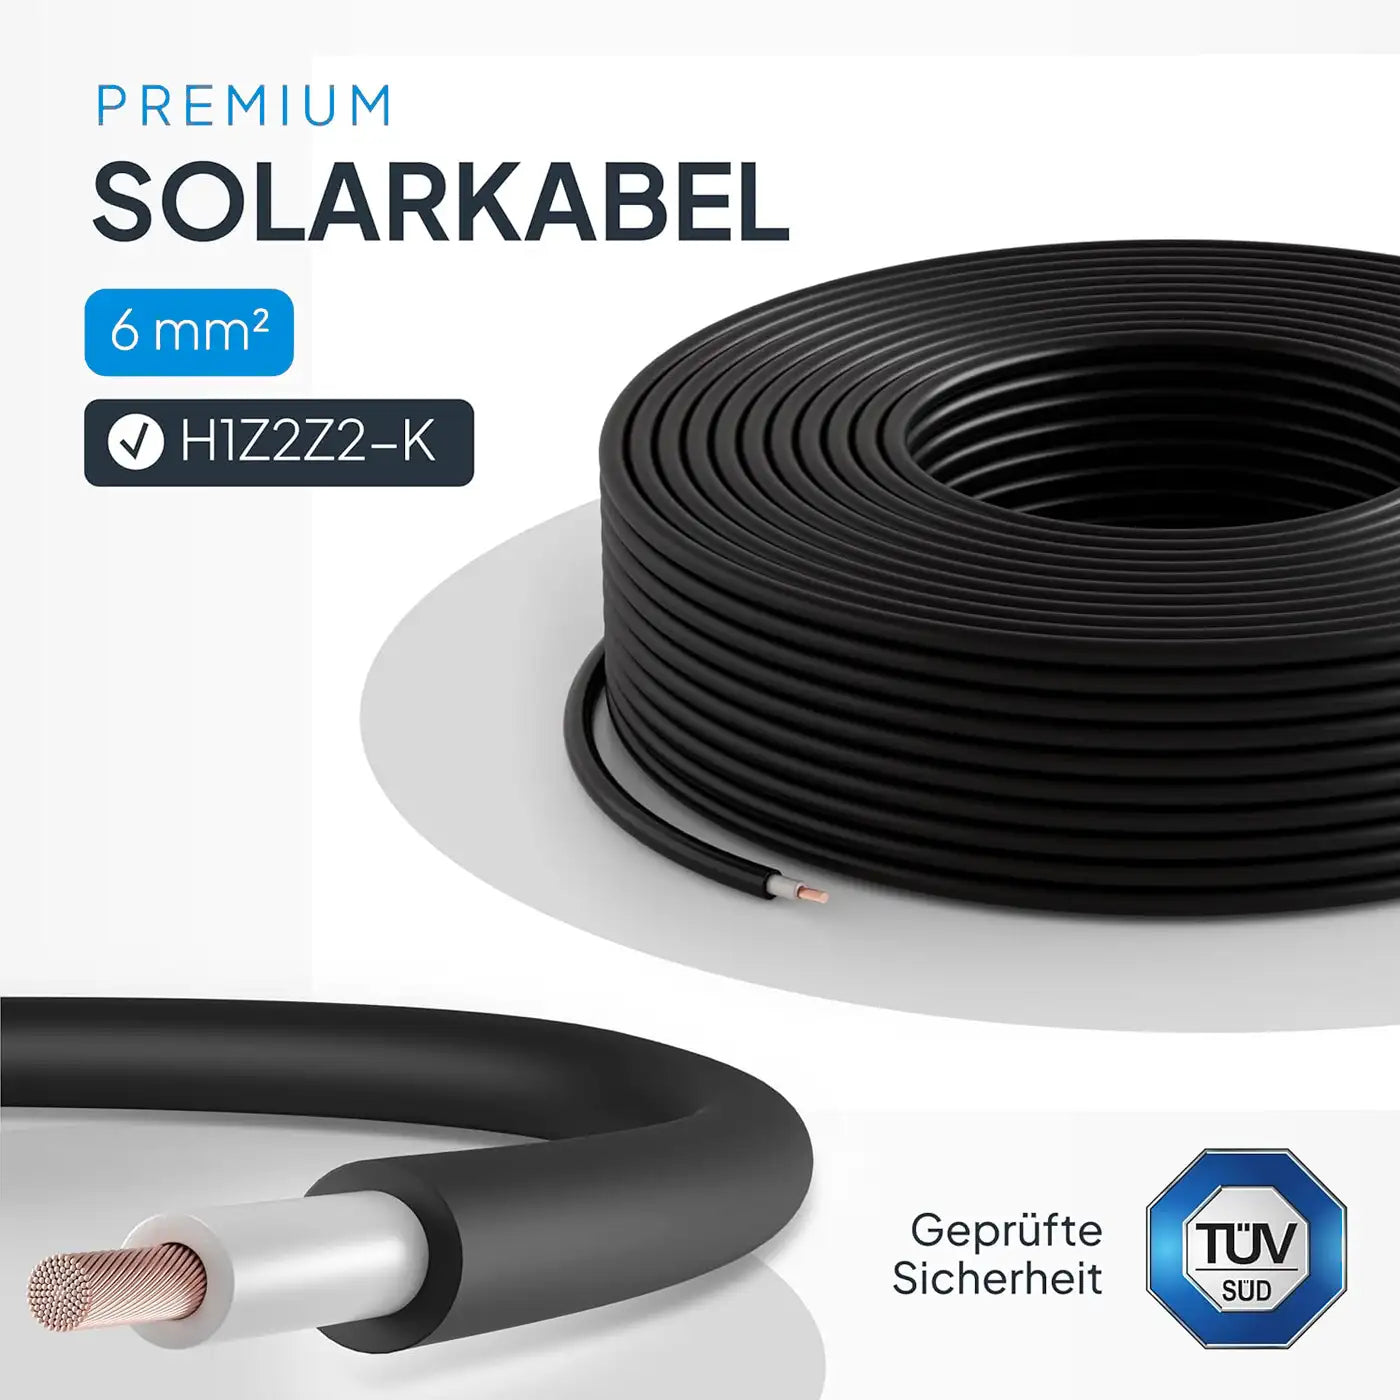 NEUT câble solaire H1Z2Z2-K 6mm2 noir/rouge 10m 25m 50m 100m